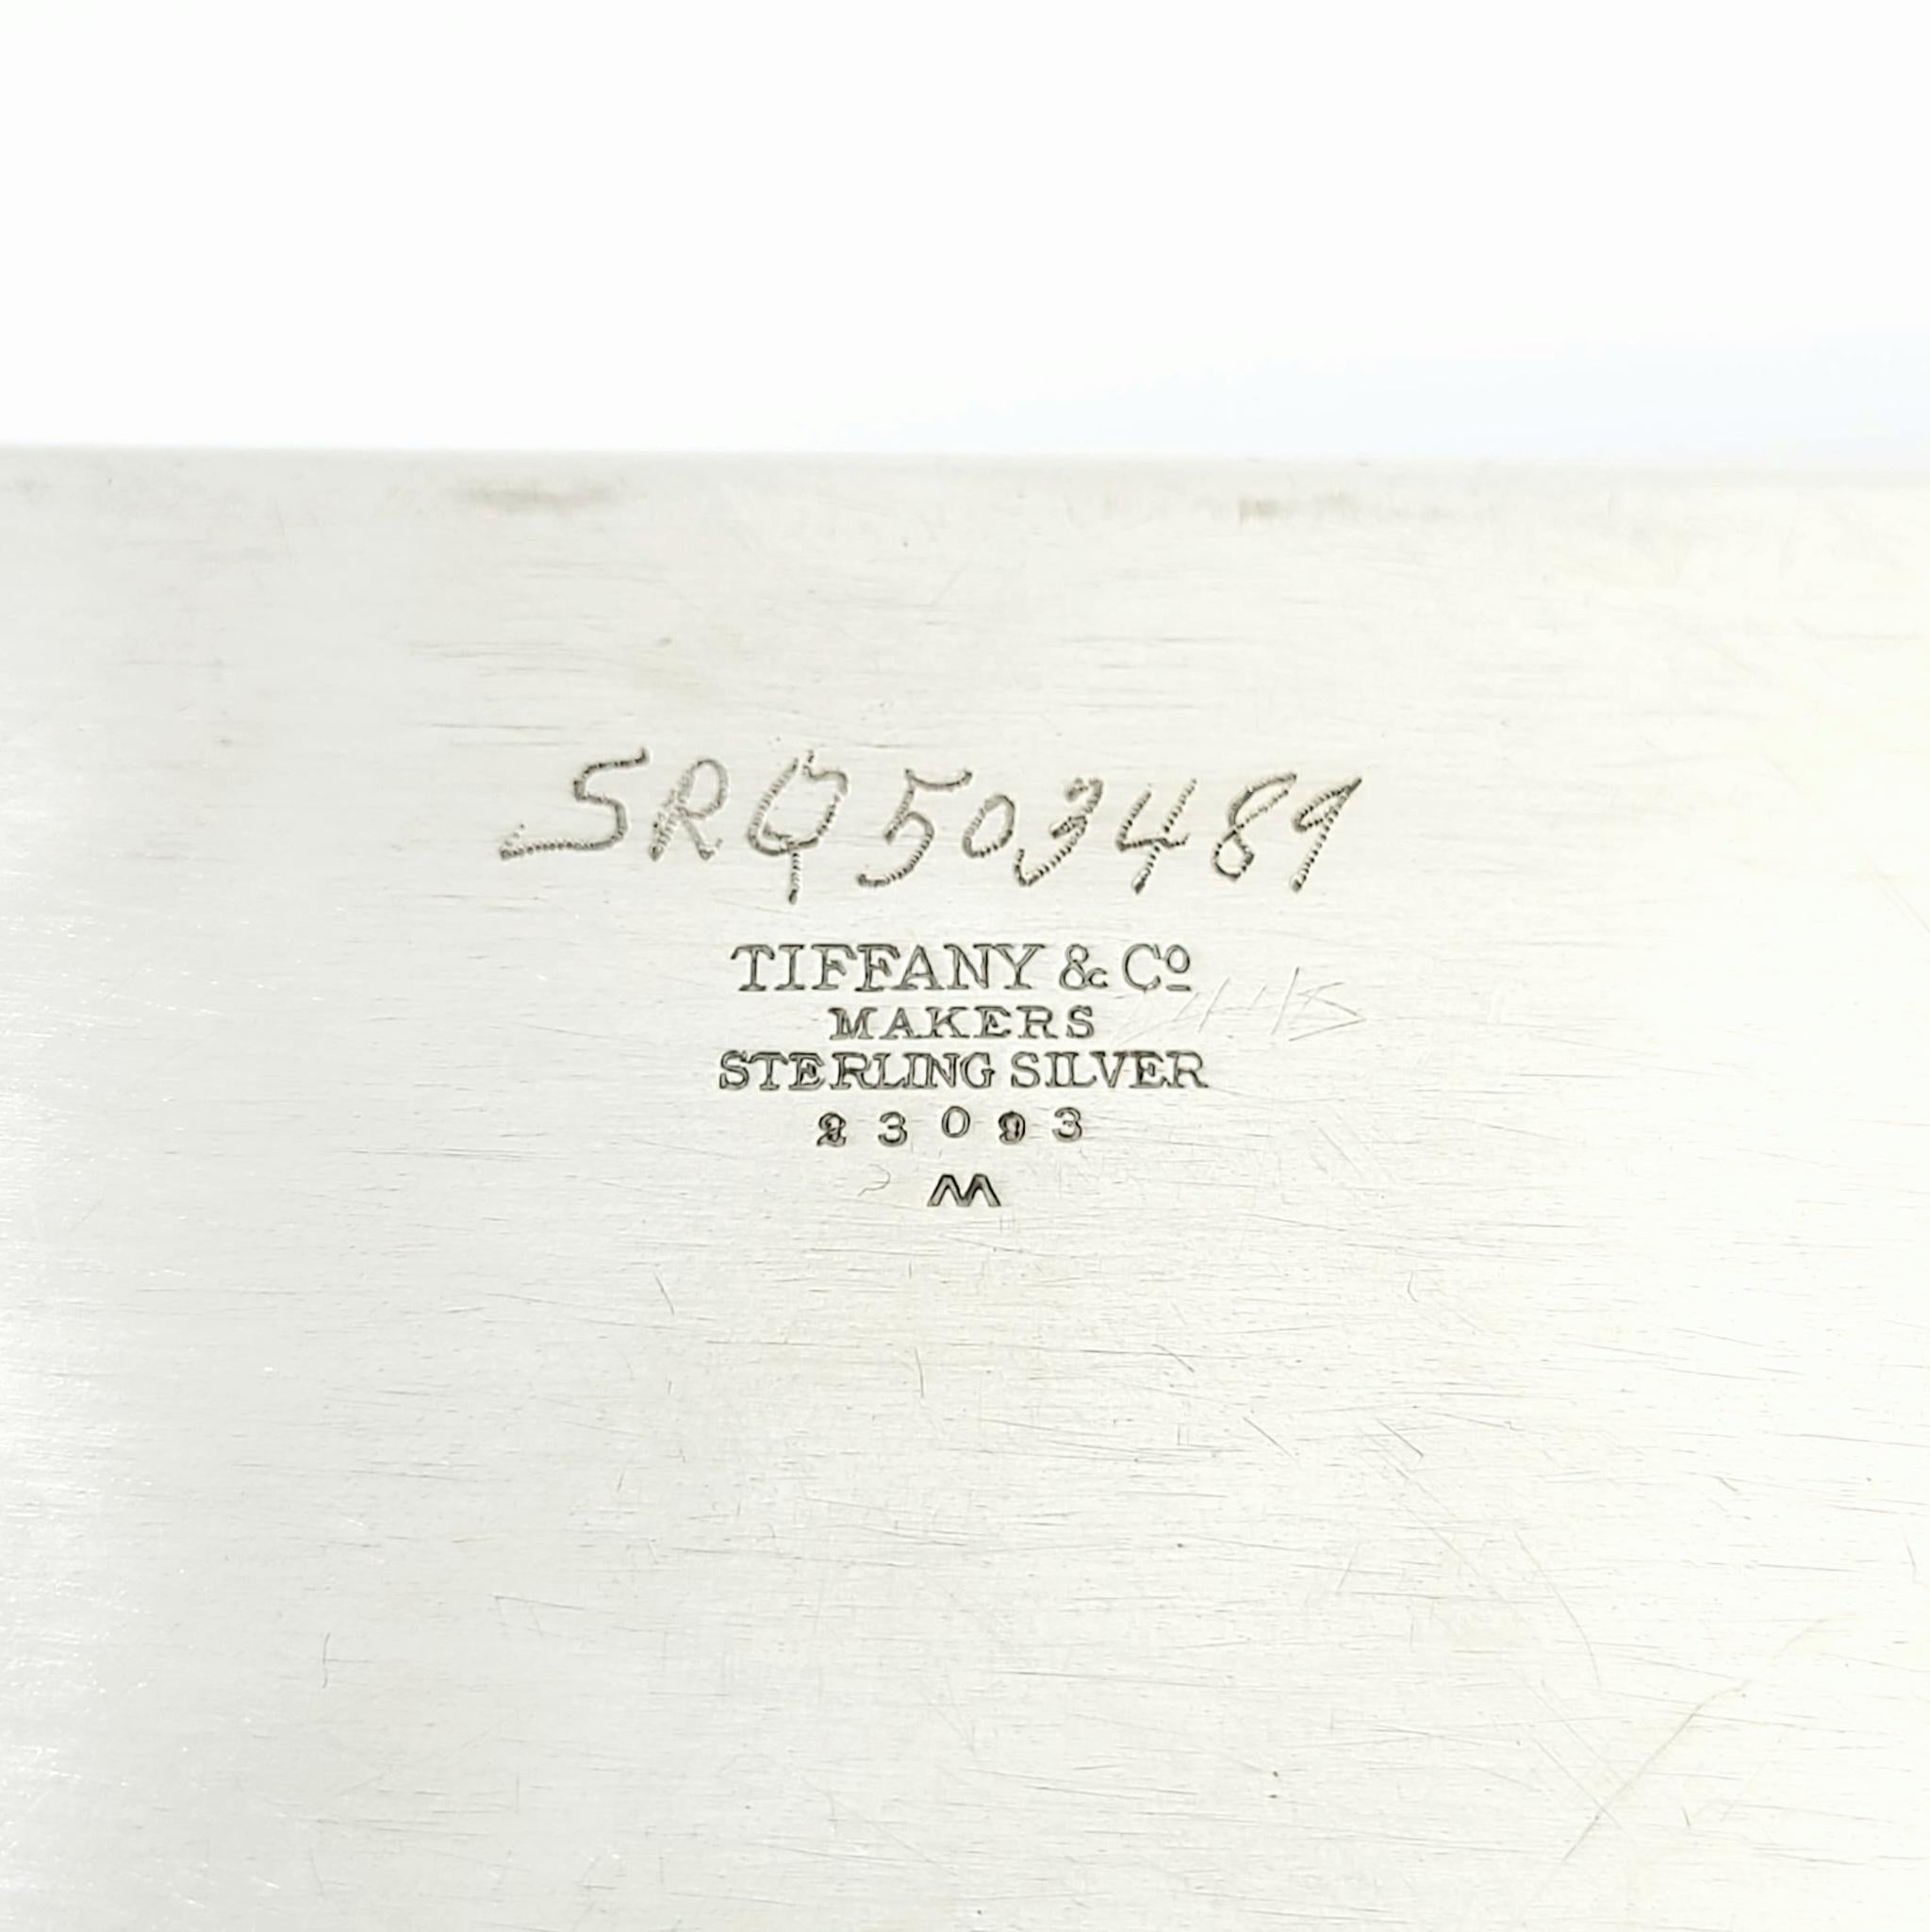 Tiffany & Co Sterling Silver Cigarette Desk Box 23093 1